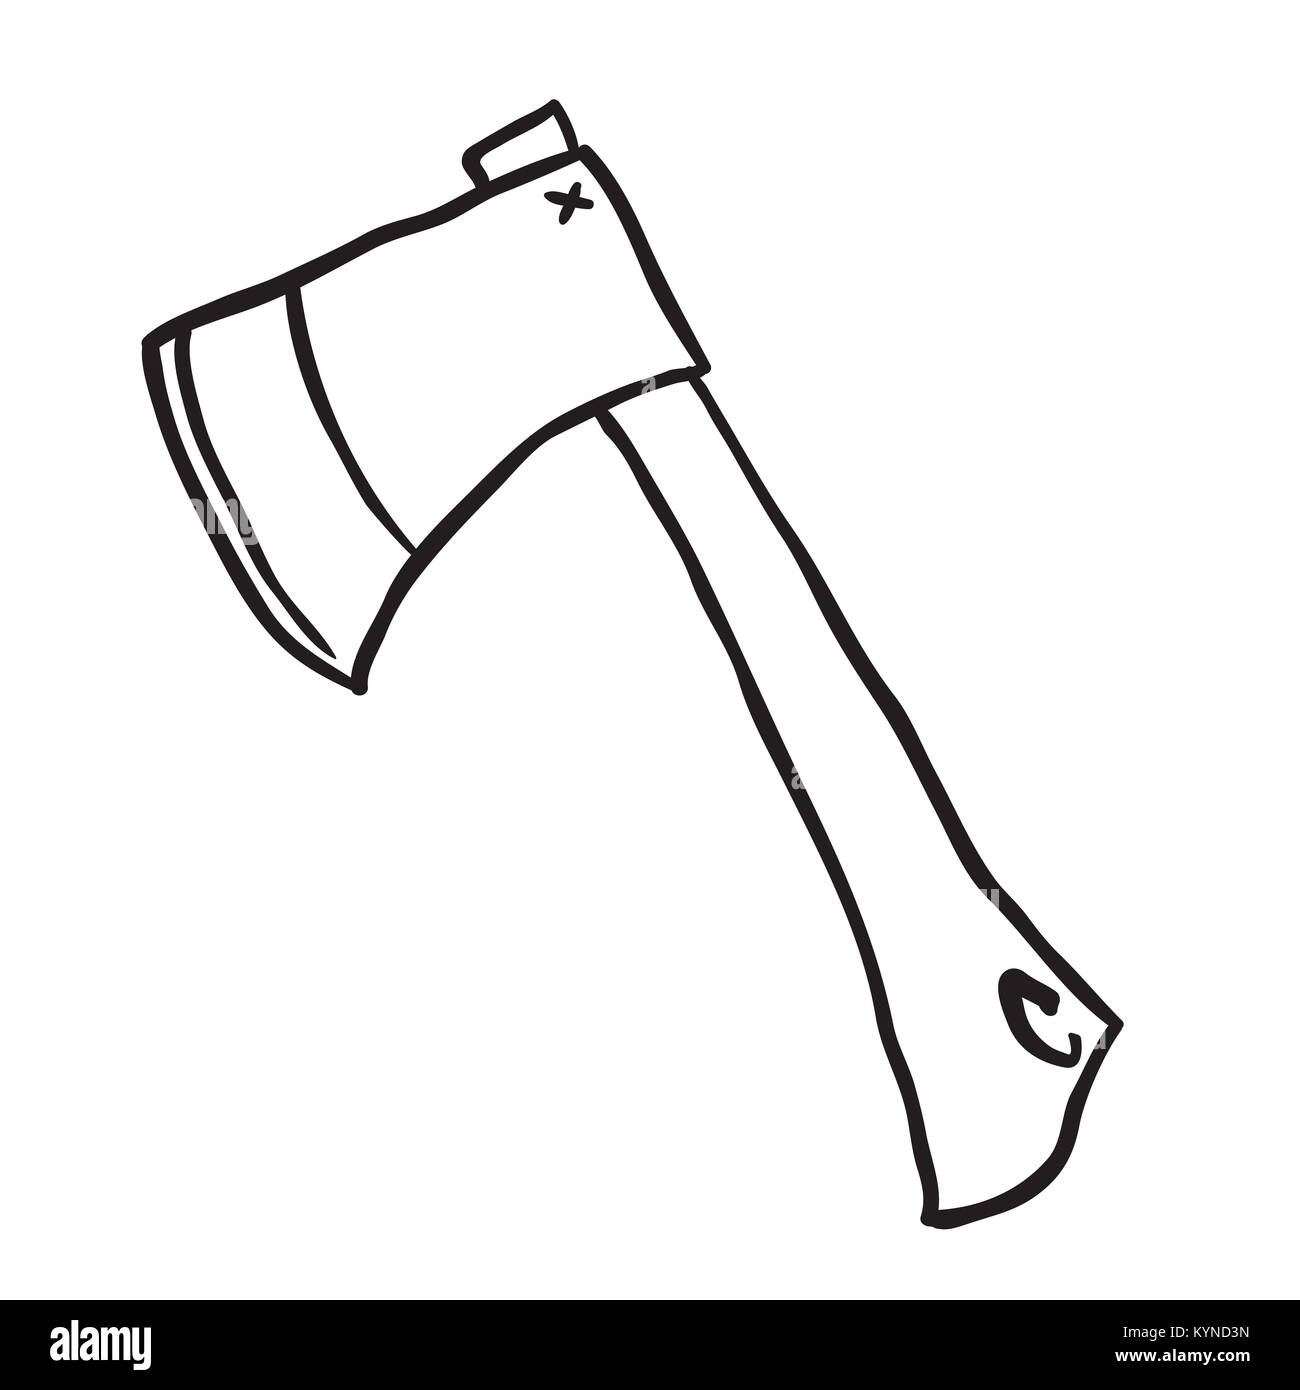 Verpersoonlijking Ventileren roman Cartoon axe Black and White Stock Photos & Images - Alamy